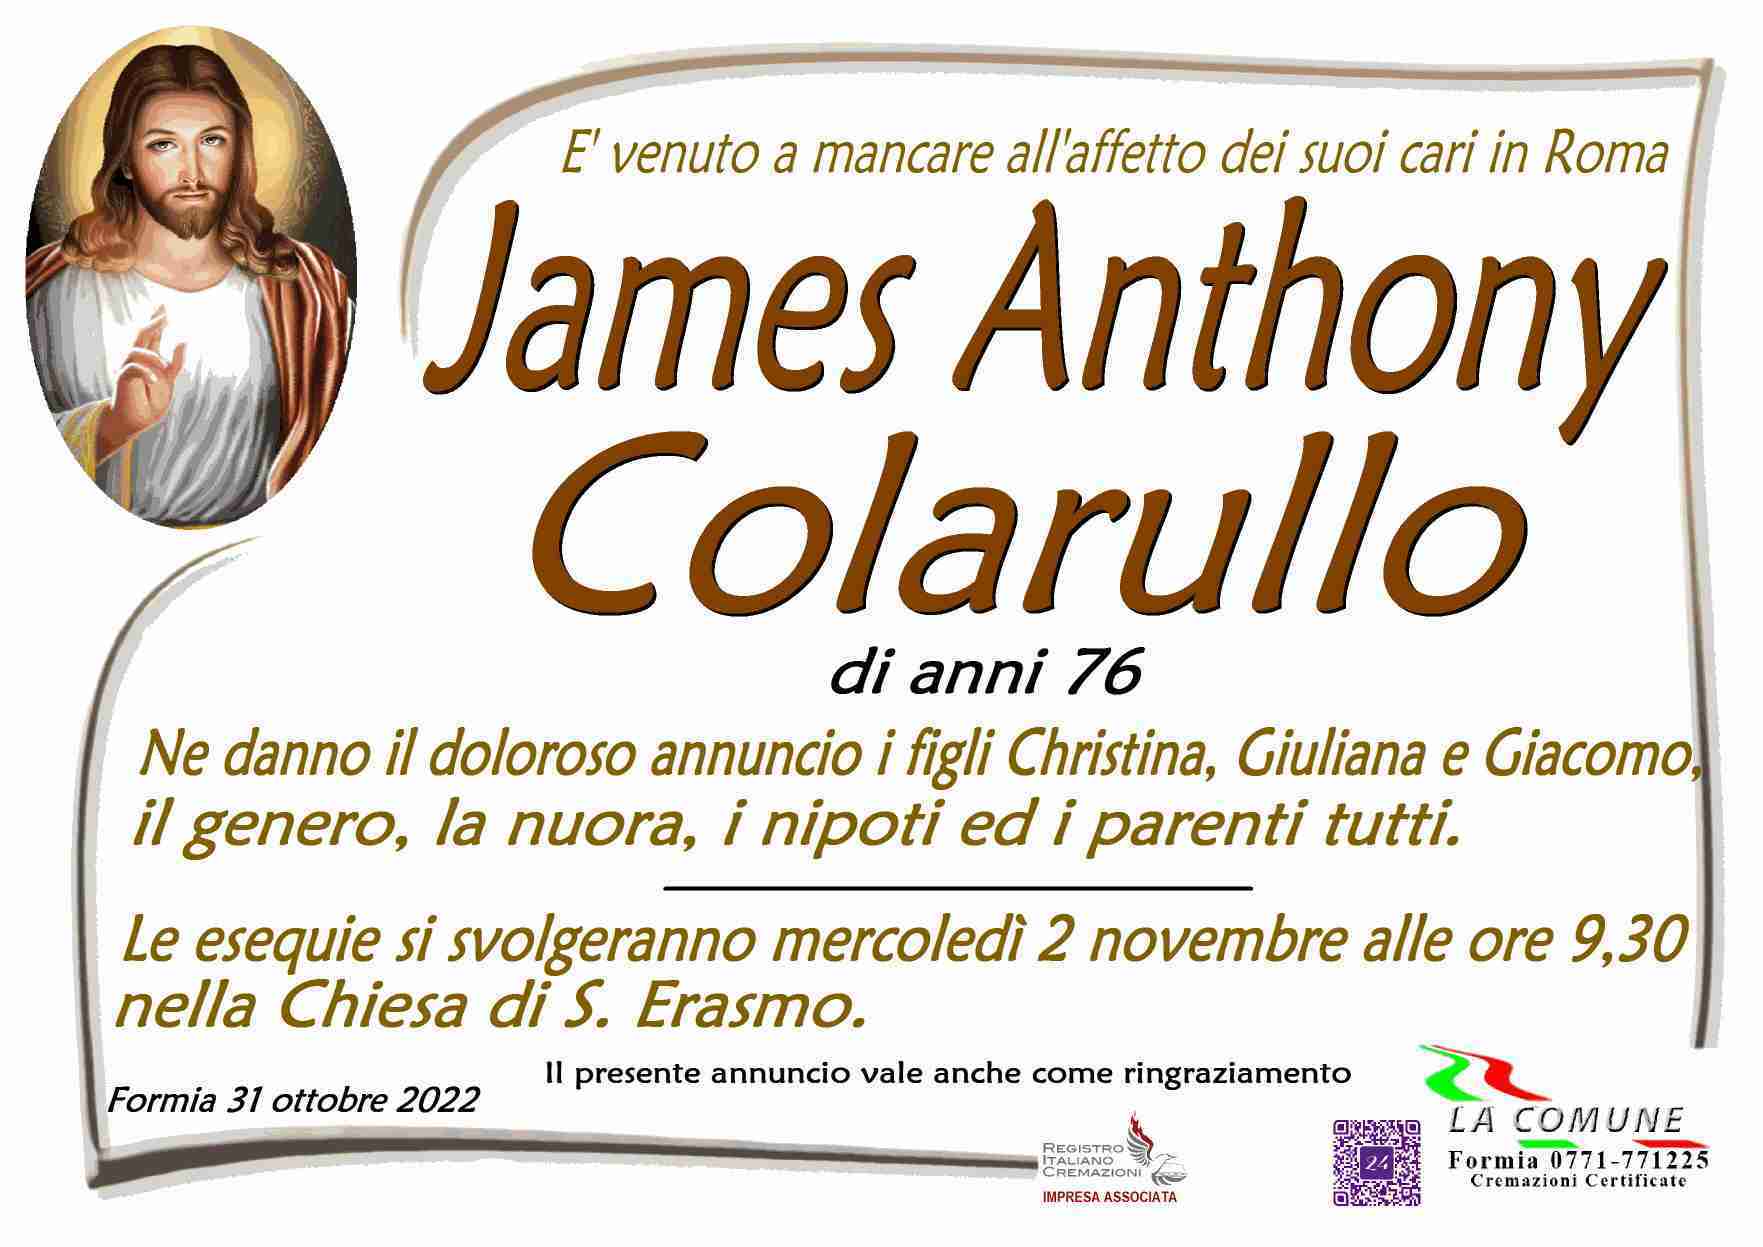 Anthony James Colarullo